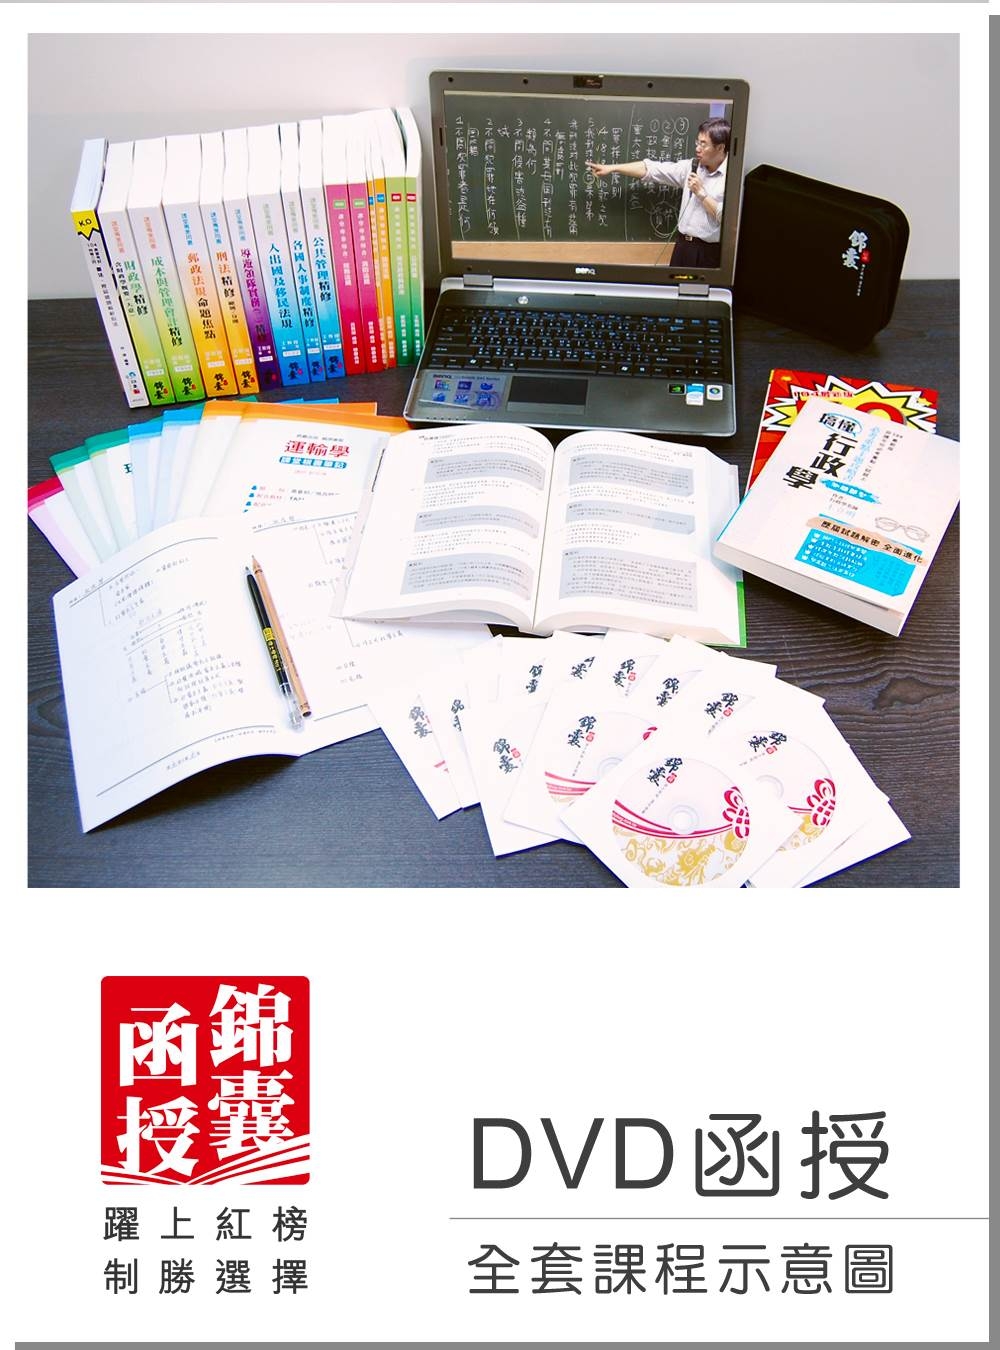 【DVD函授】中華郵政第二次招考(專業職二)-全套課程(104版)